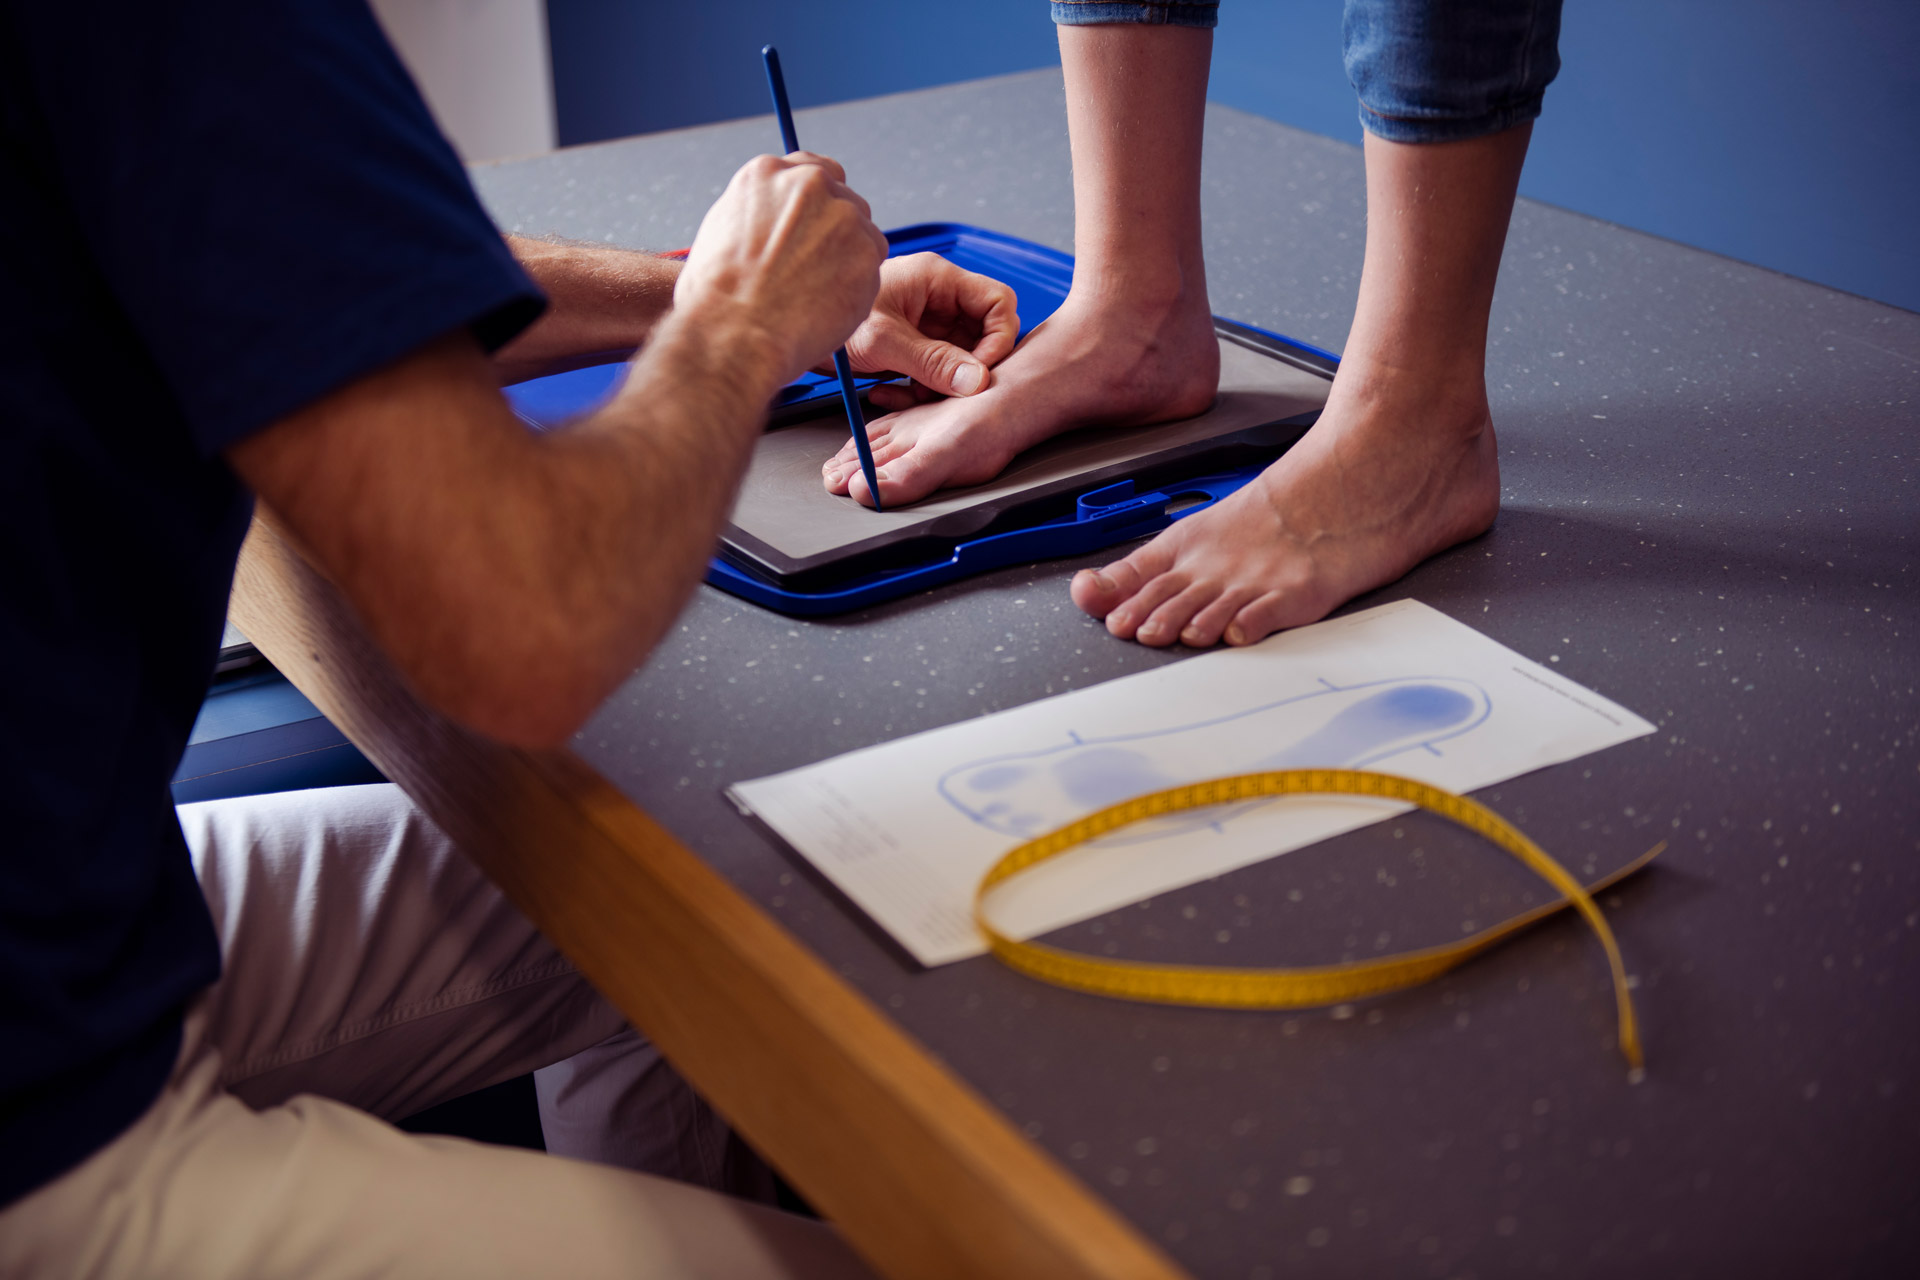 Das Bild zeigt einen Kinderfuß auf einer Matte, die einen Abdruck nimmt, während eine Fachkraft den Fuß umzeichnet.